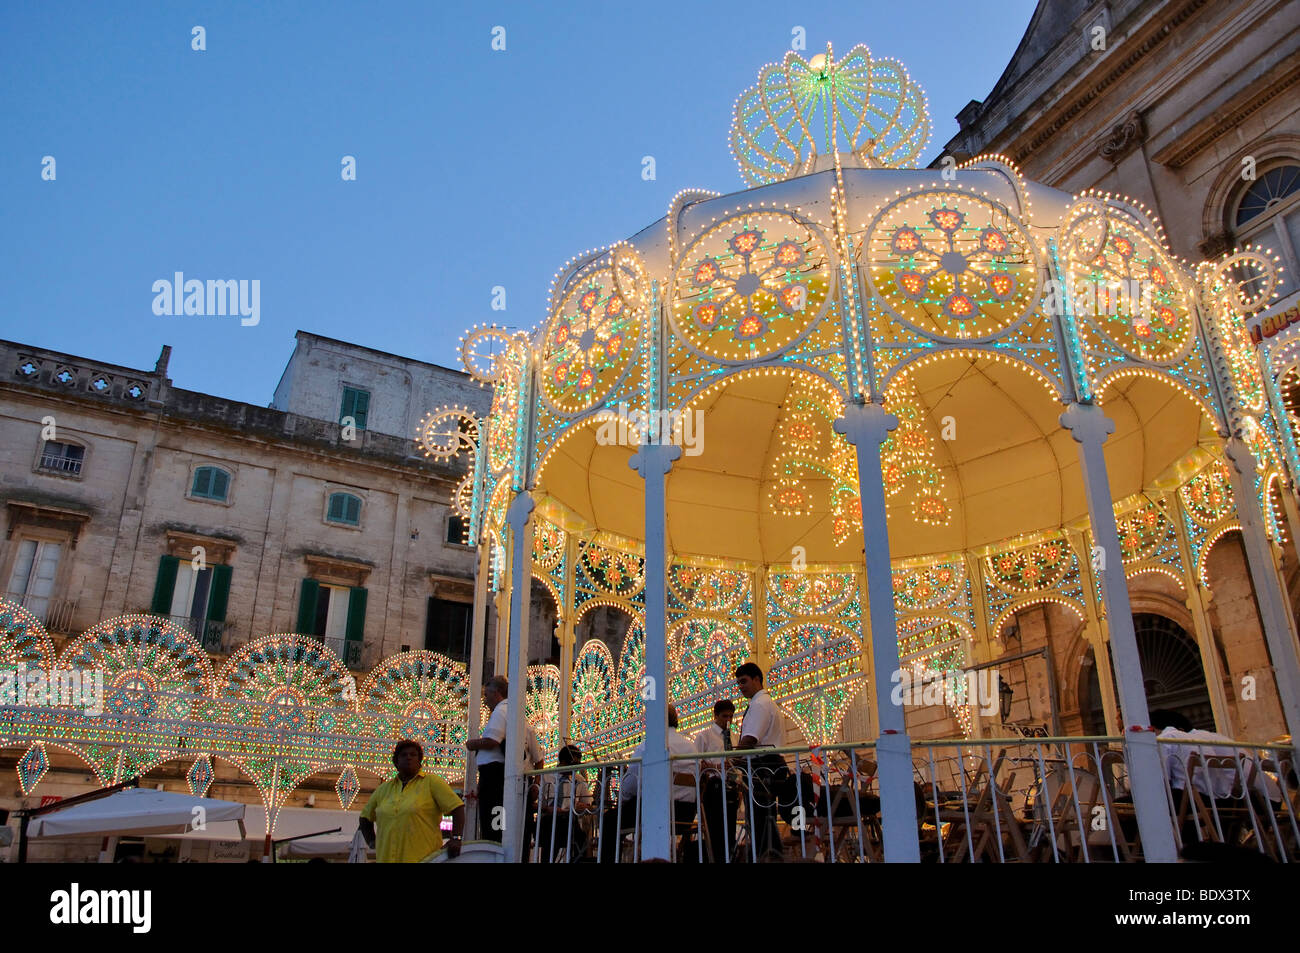 Illuminated bandstand, Cavalcata di Sant Oronzo, Piazza della Liberta, Old Town, Ostuni, Brindisi Province, Puglia Region, Italy Stock Photo